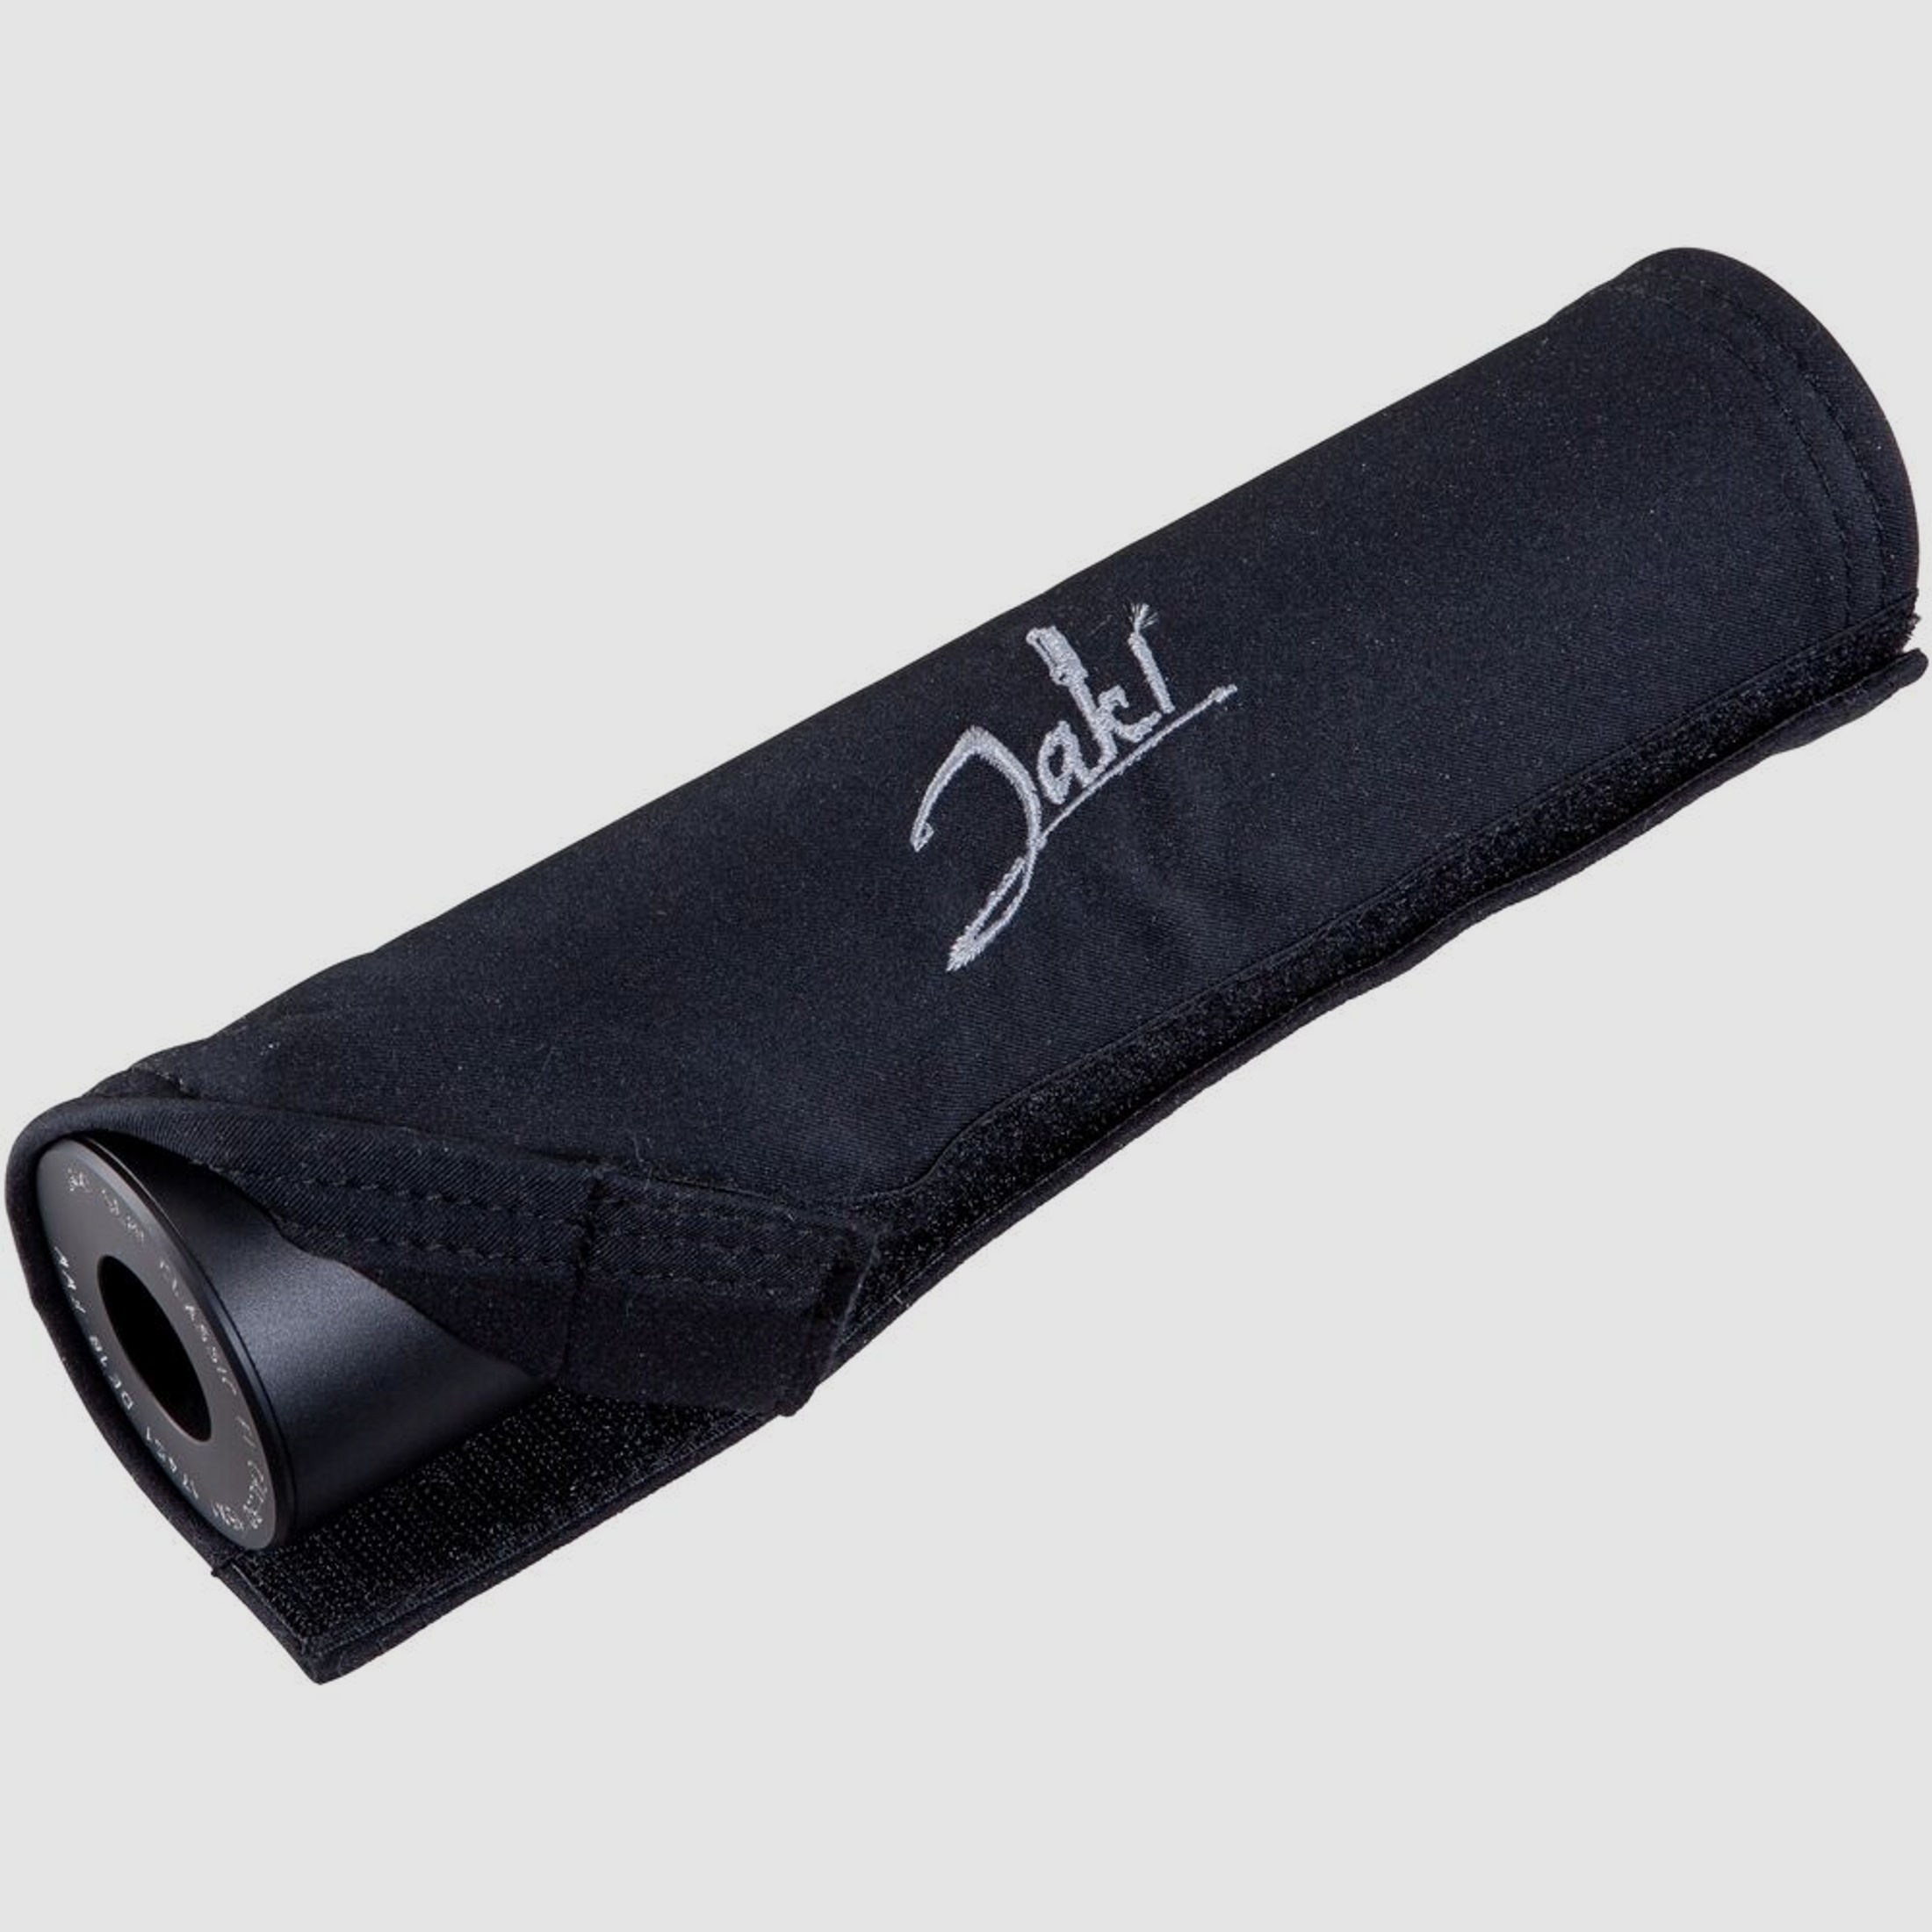 JAKI	 Heat Cover für Jaki-Schalldämpfer  für alle Jaki-Schalldämpfer mit 129 mm Gesamtlänge